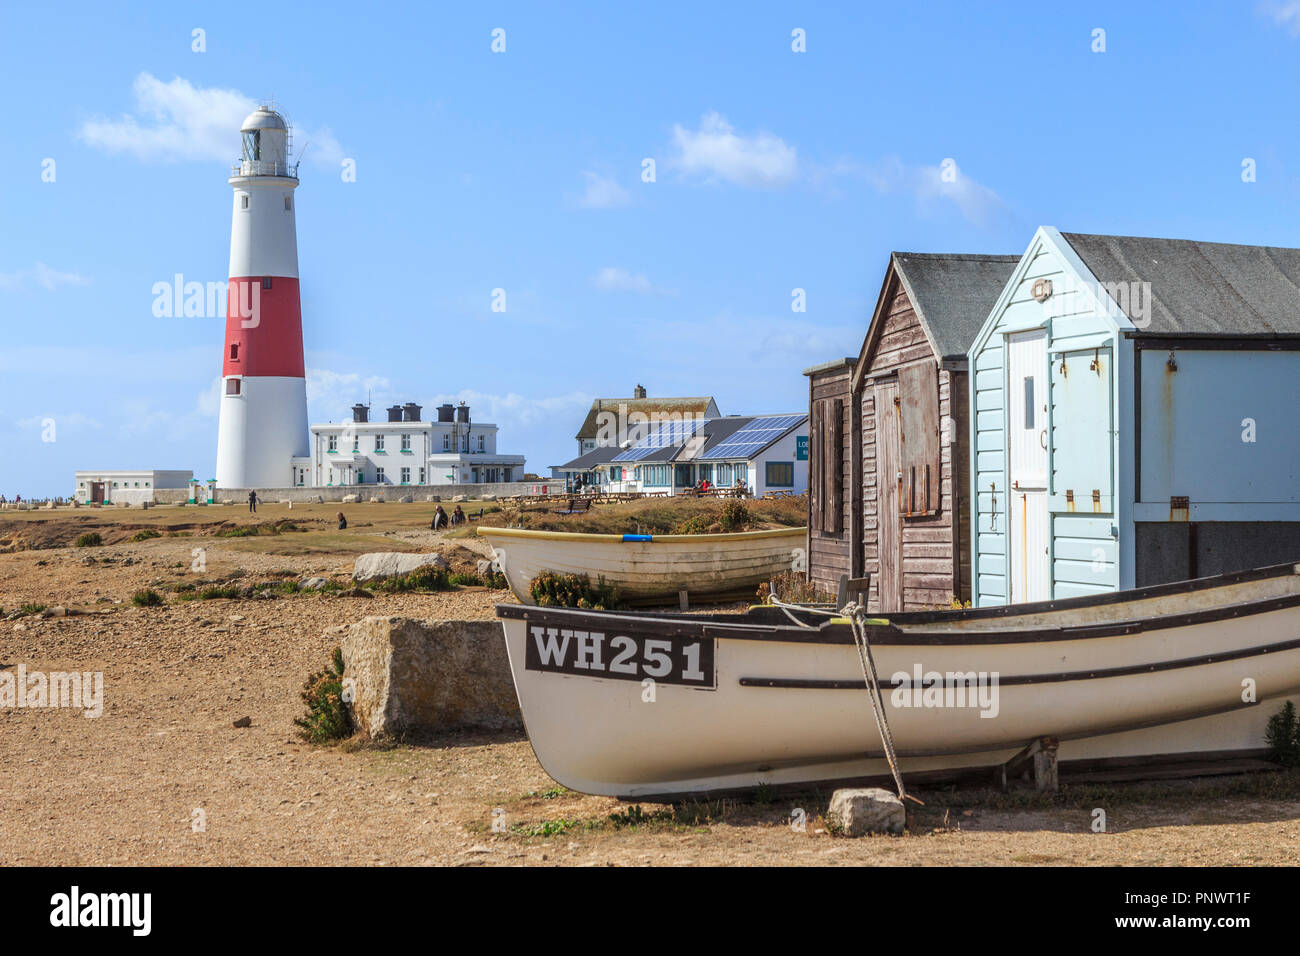 Isle of Portland fishing boats, fishing sheds, lighthouse, , near weymouth, Dorset, England, uk Stock Photo